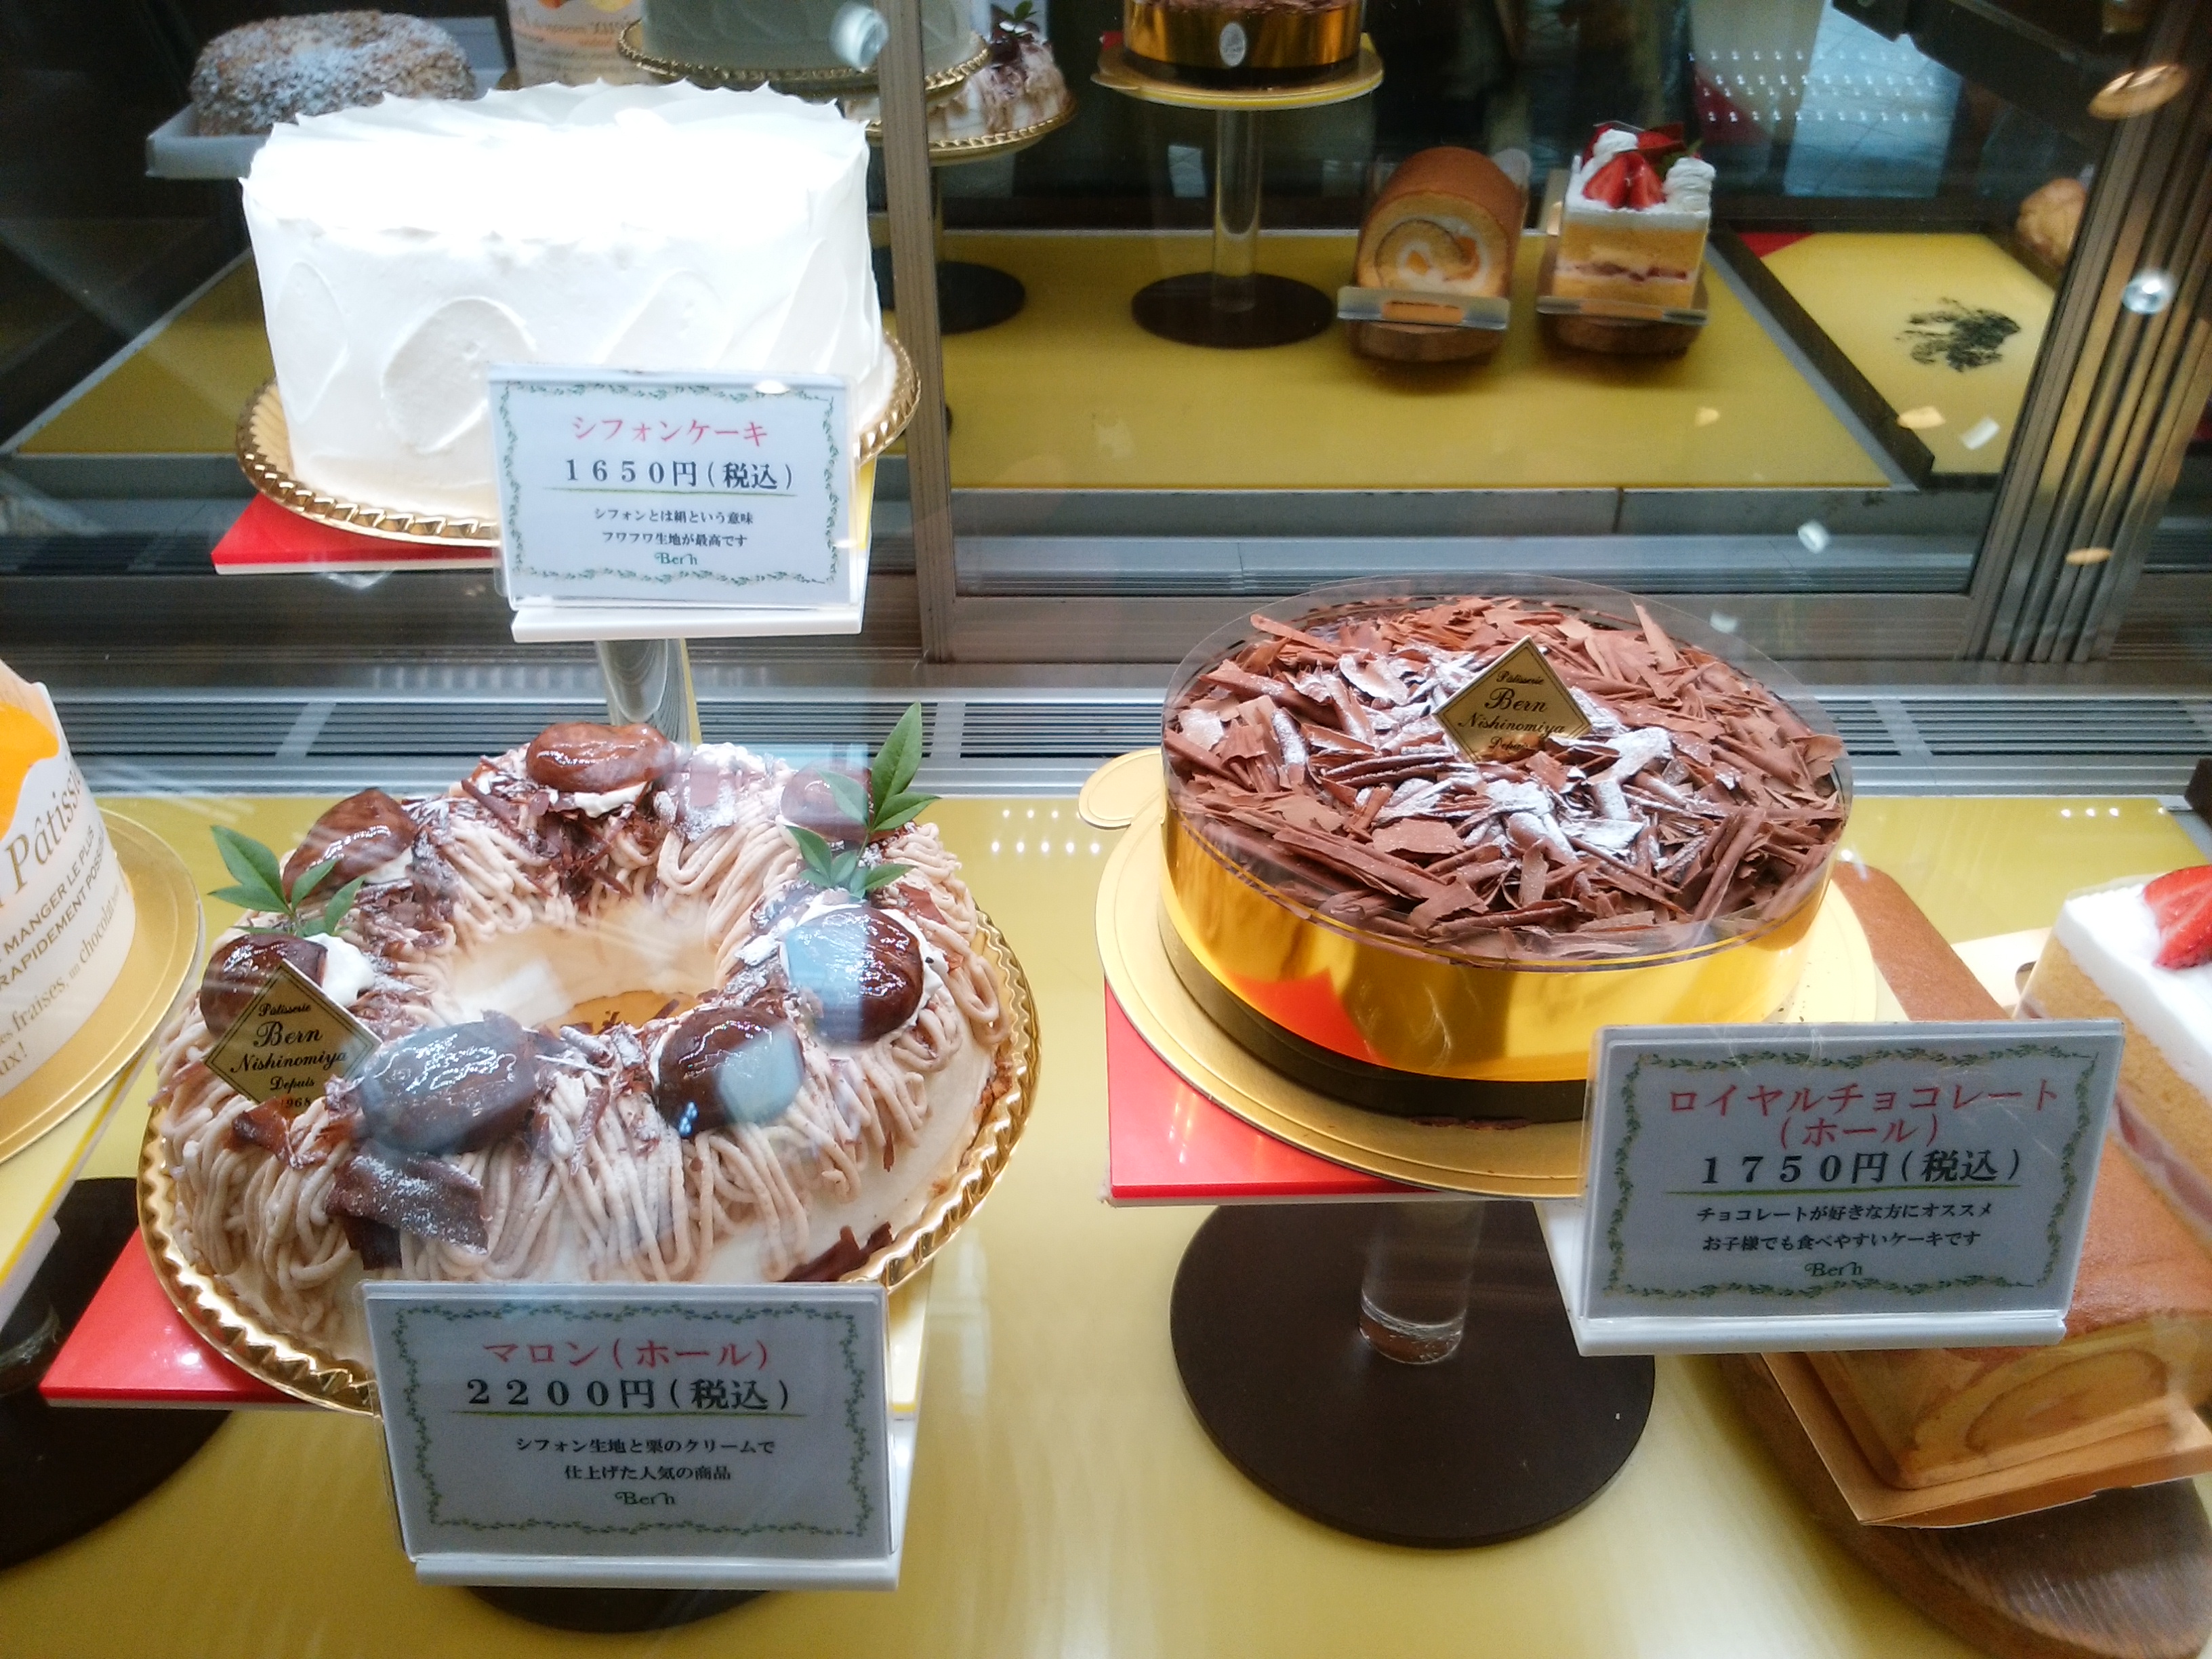 ベルン 兵庫県西宮市 三度の飯よりケーキ好き 三重県にもっとケーキバイキングを